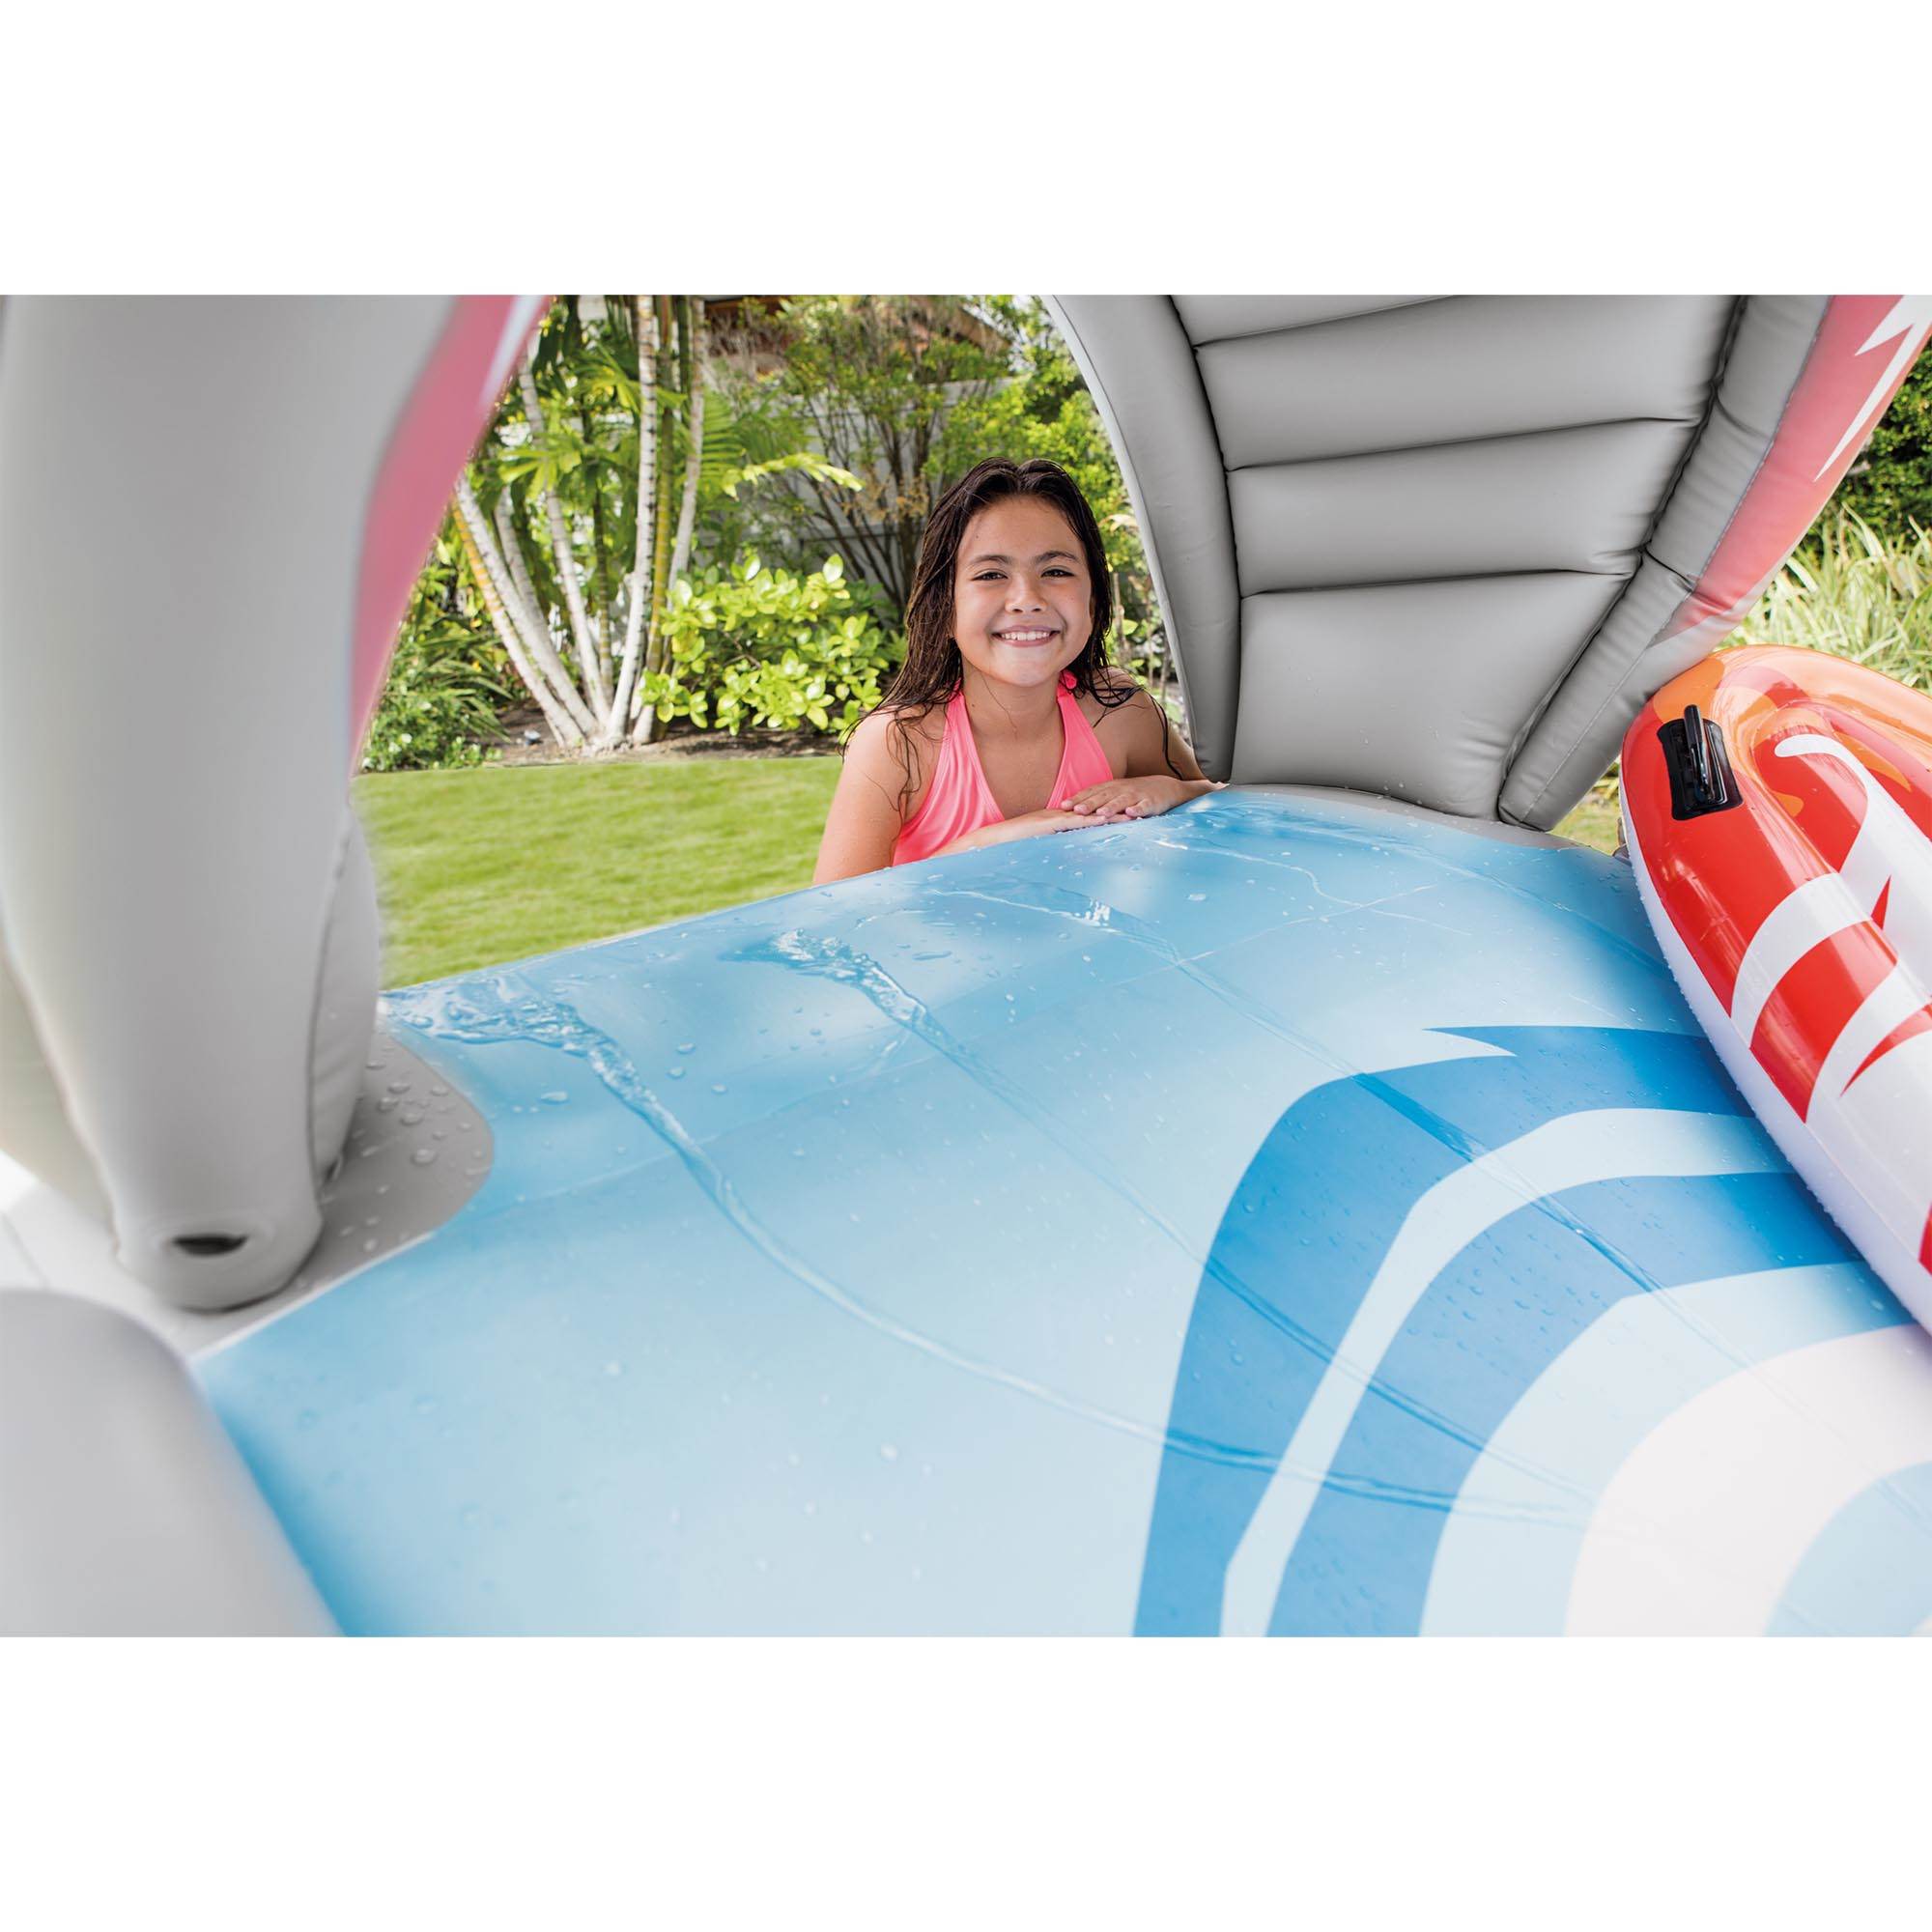 FREE POST NEW Intex Inflatable Surf n Slide Water Slide Pool Toy Kids Activity 